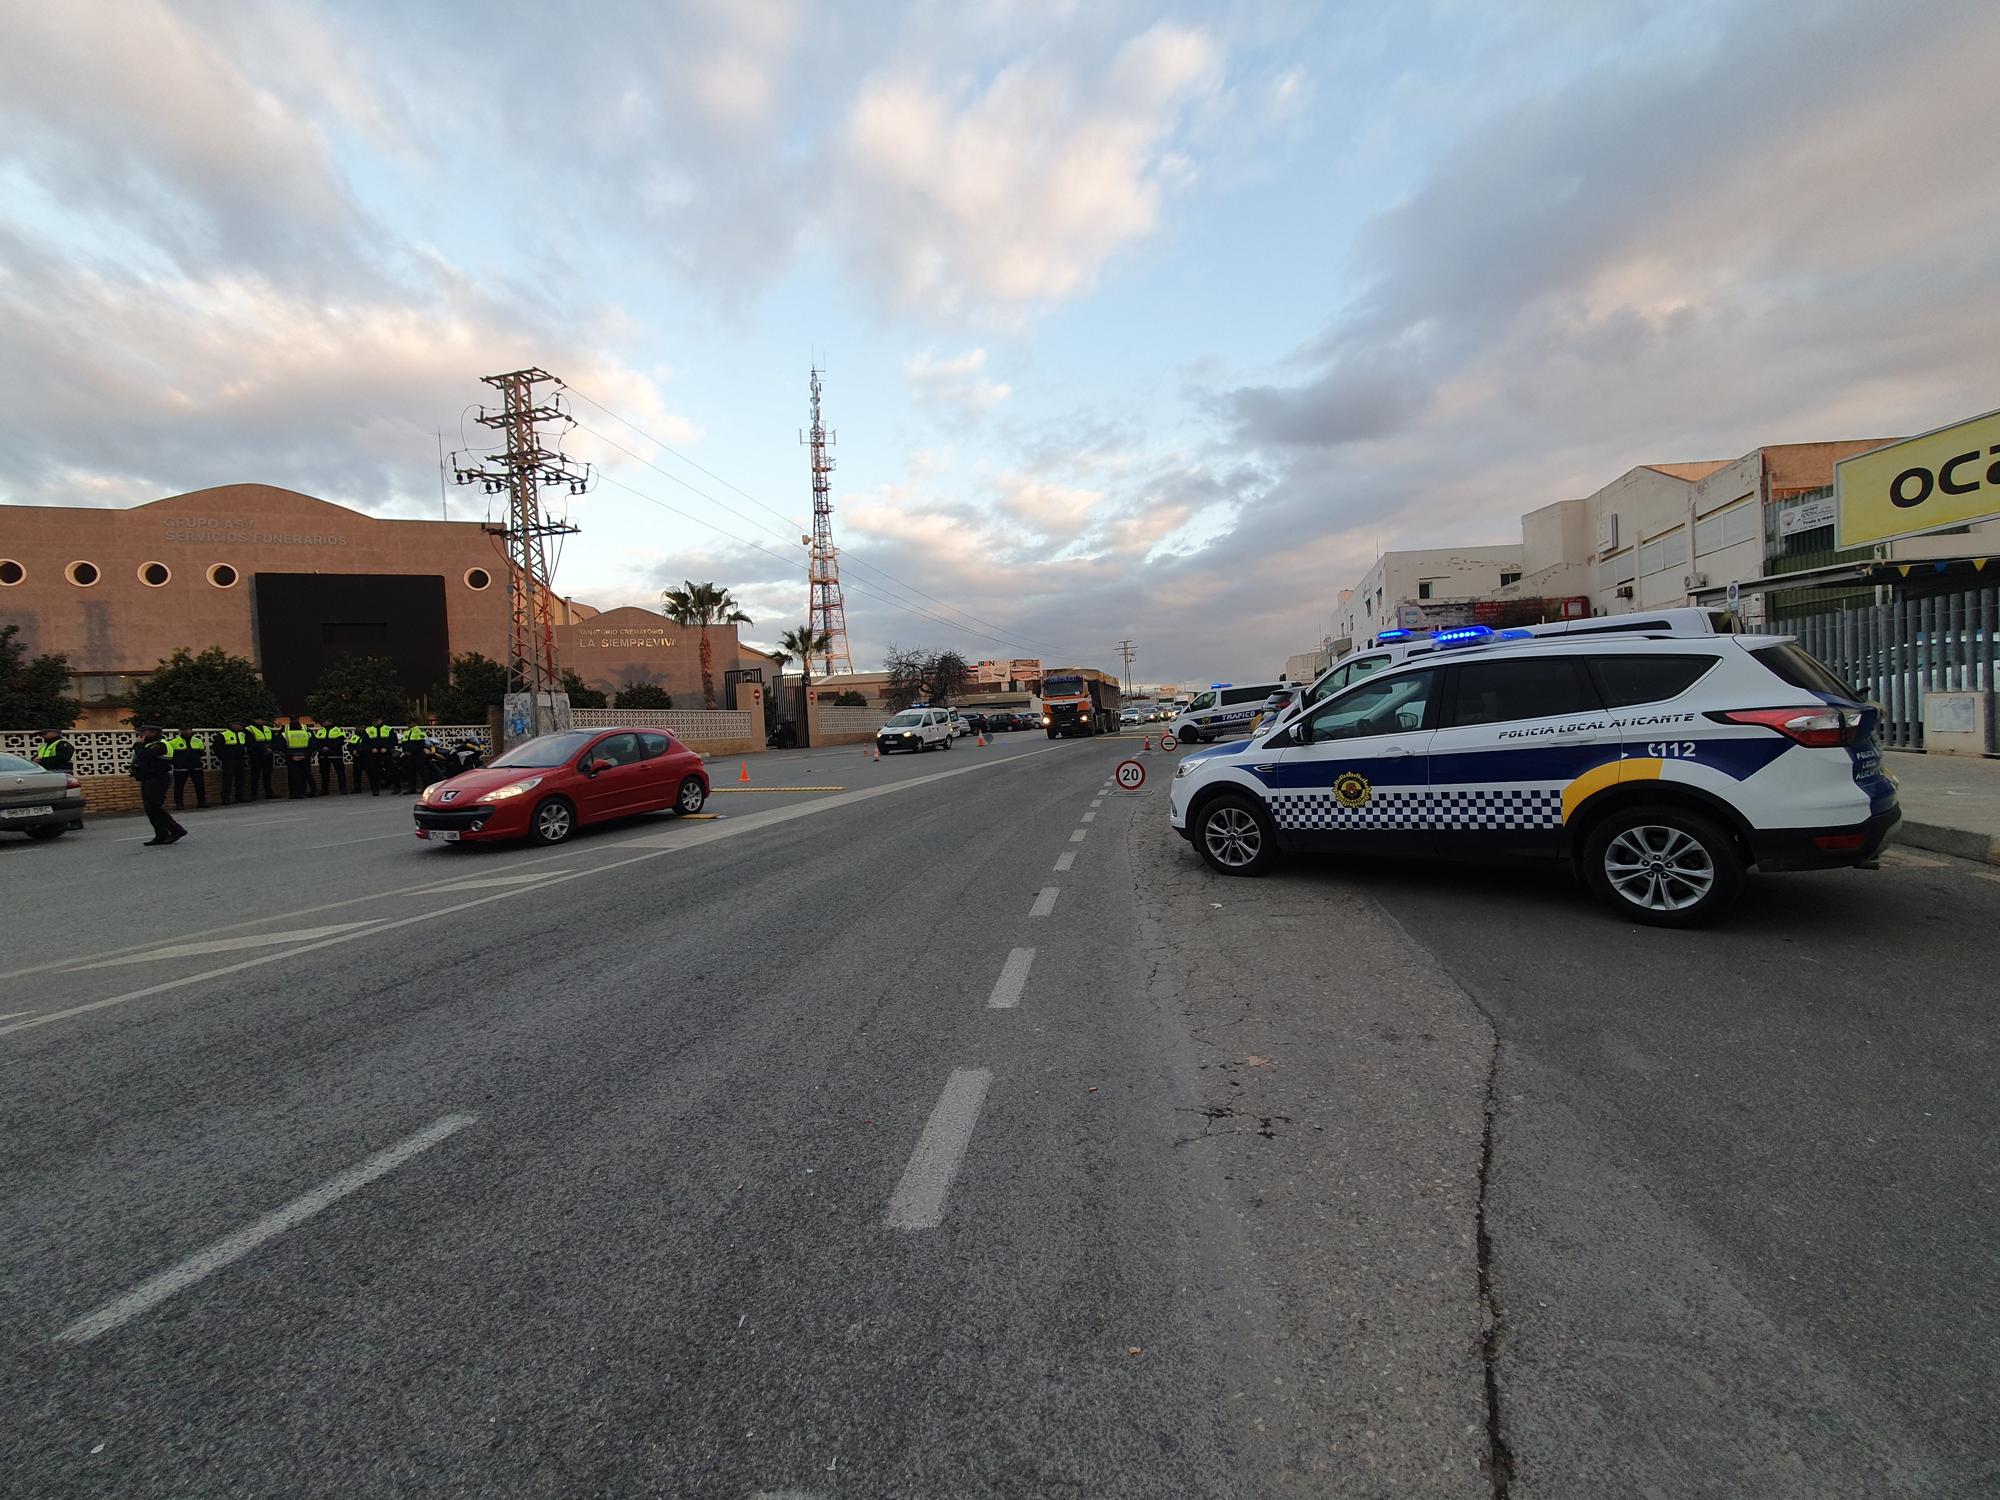 200 policías locales desplegados en un cruce de Alicante